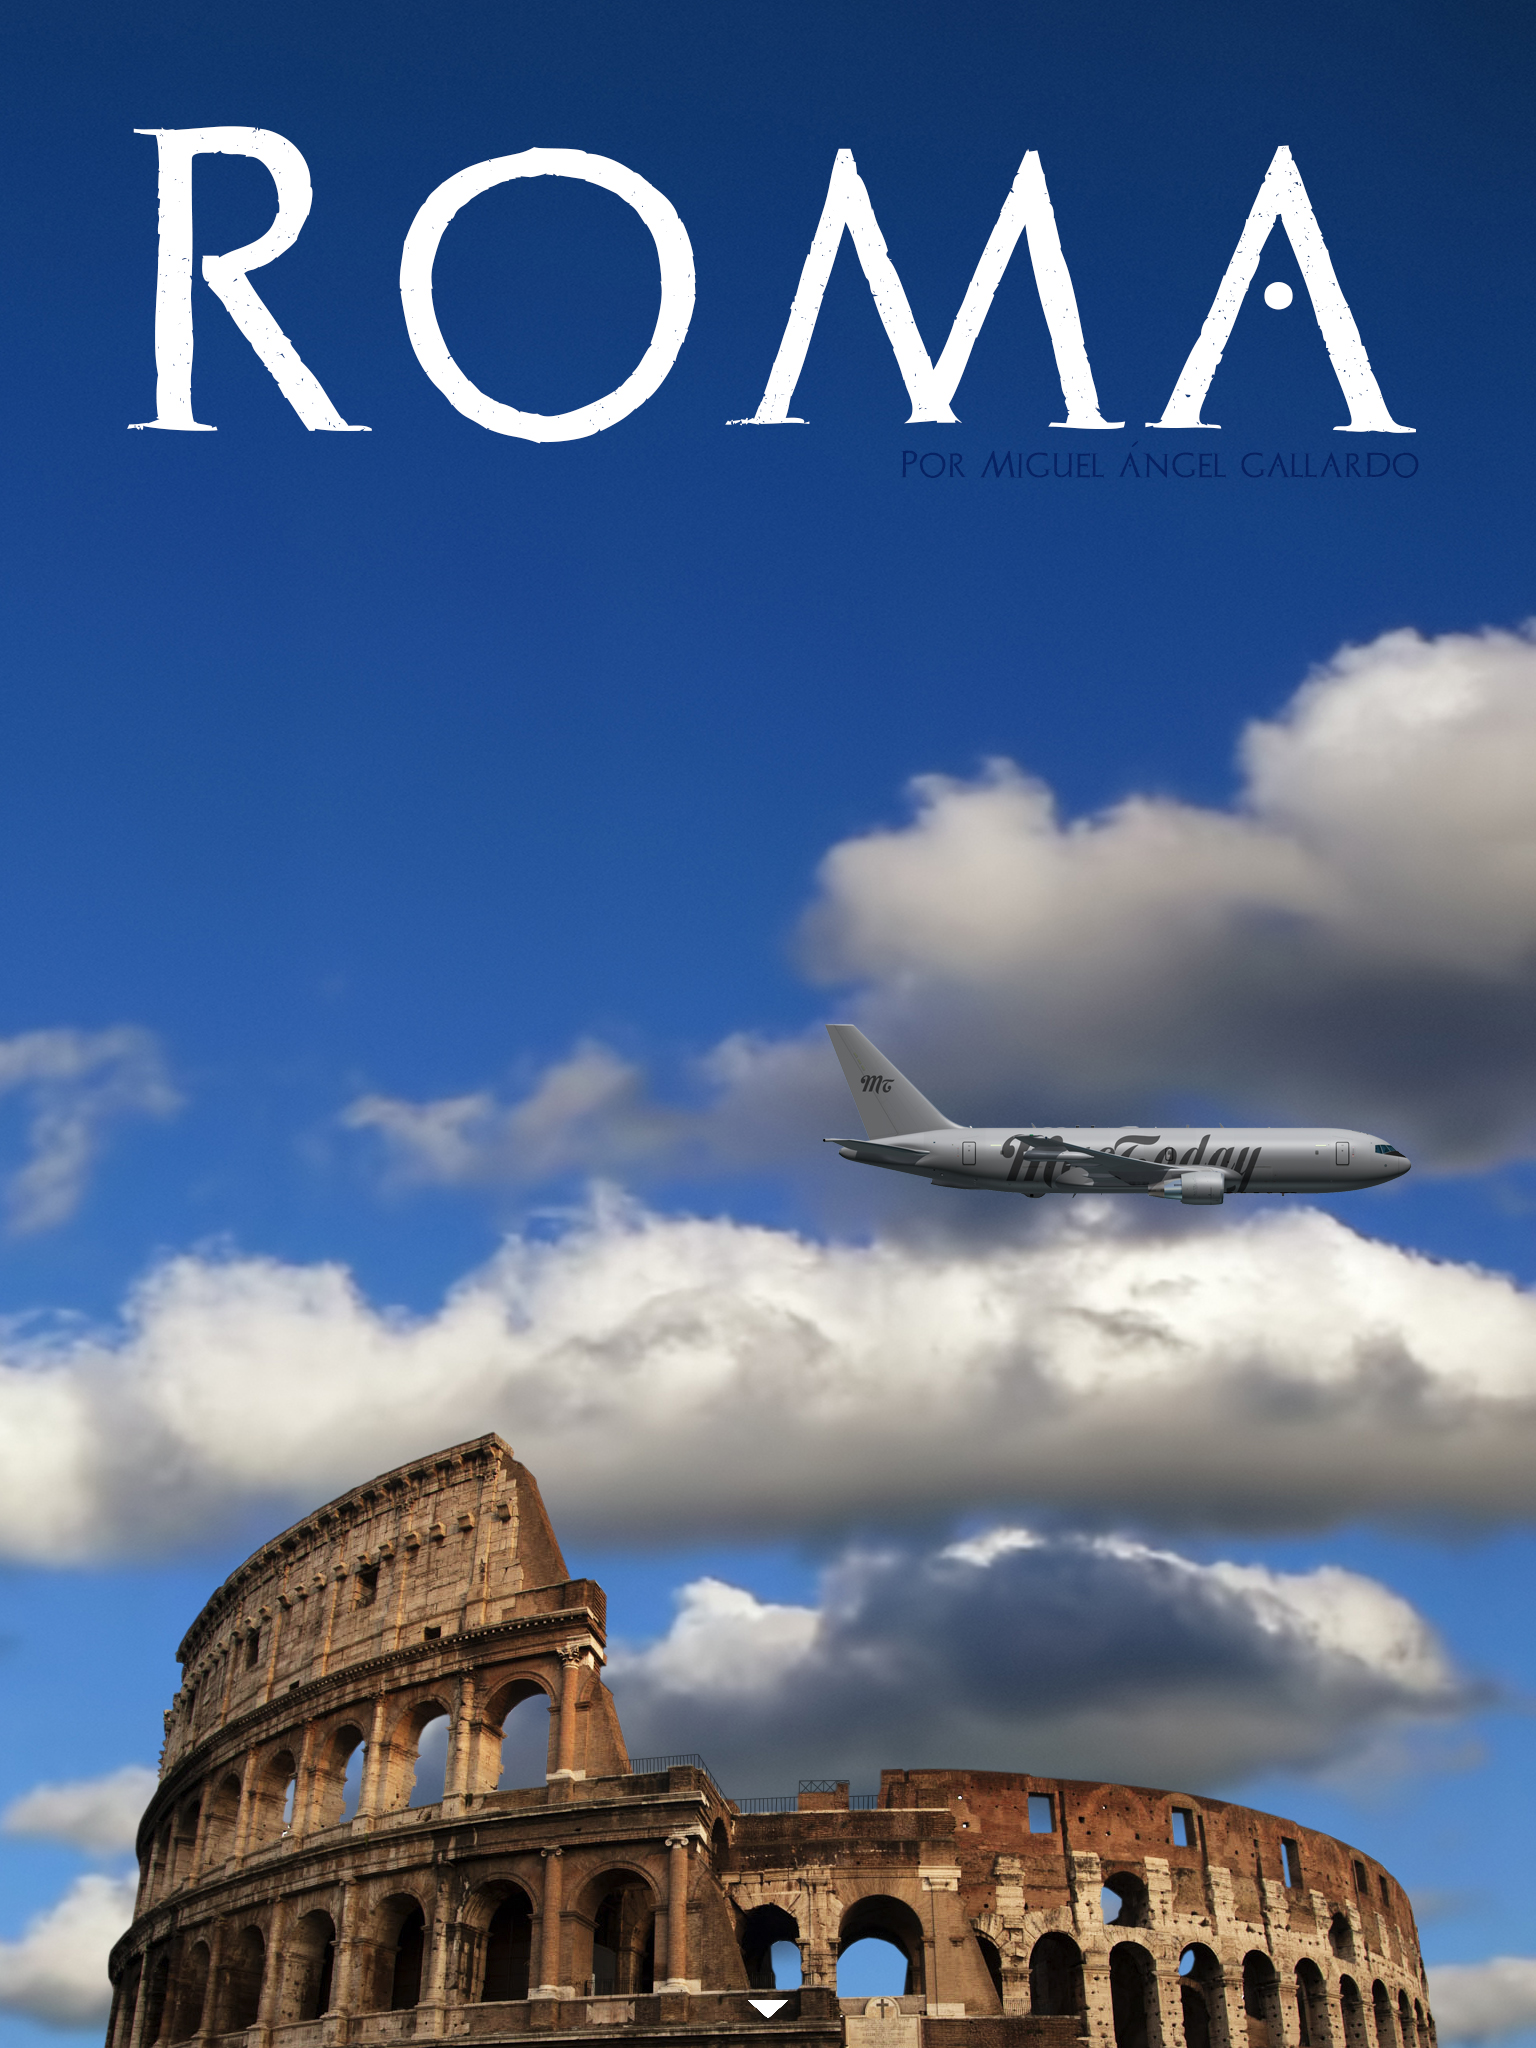 viajamos a roma. Continúa el artículo abajo